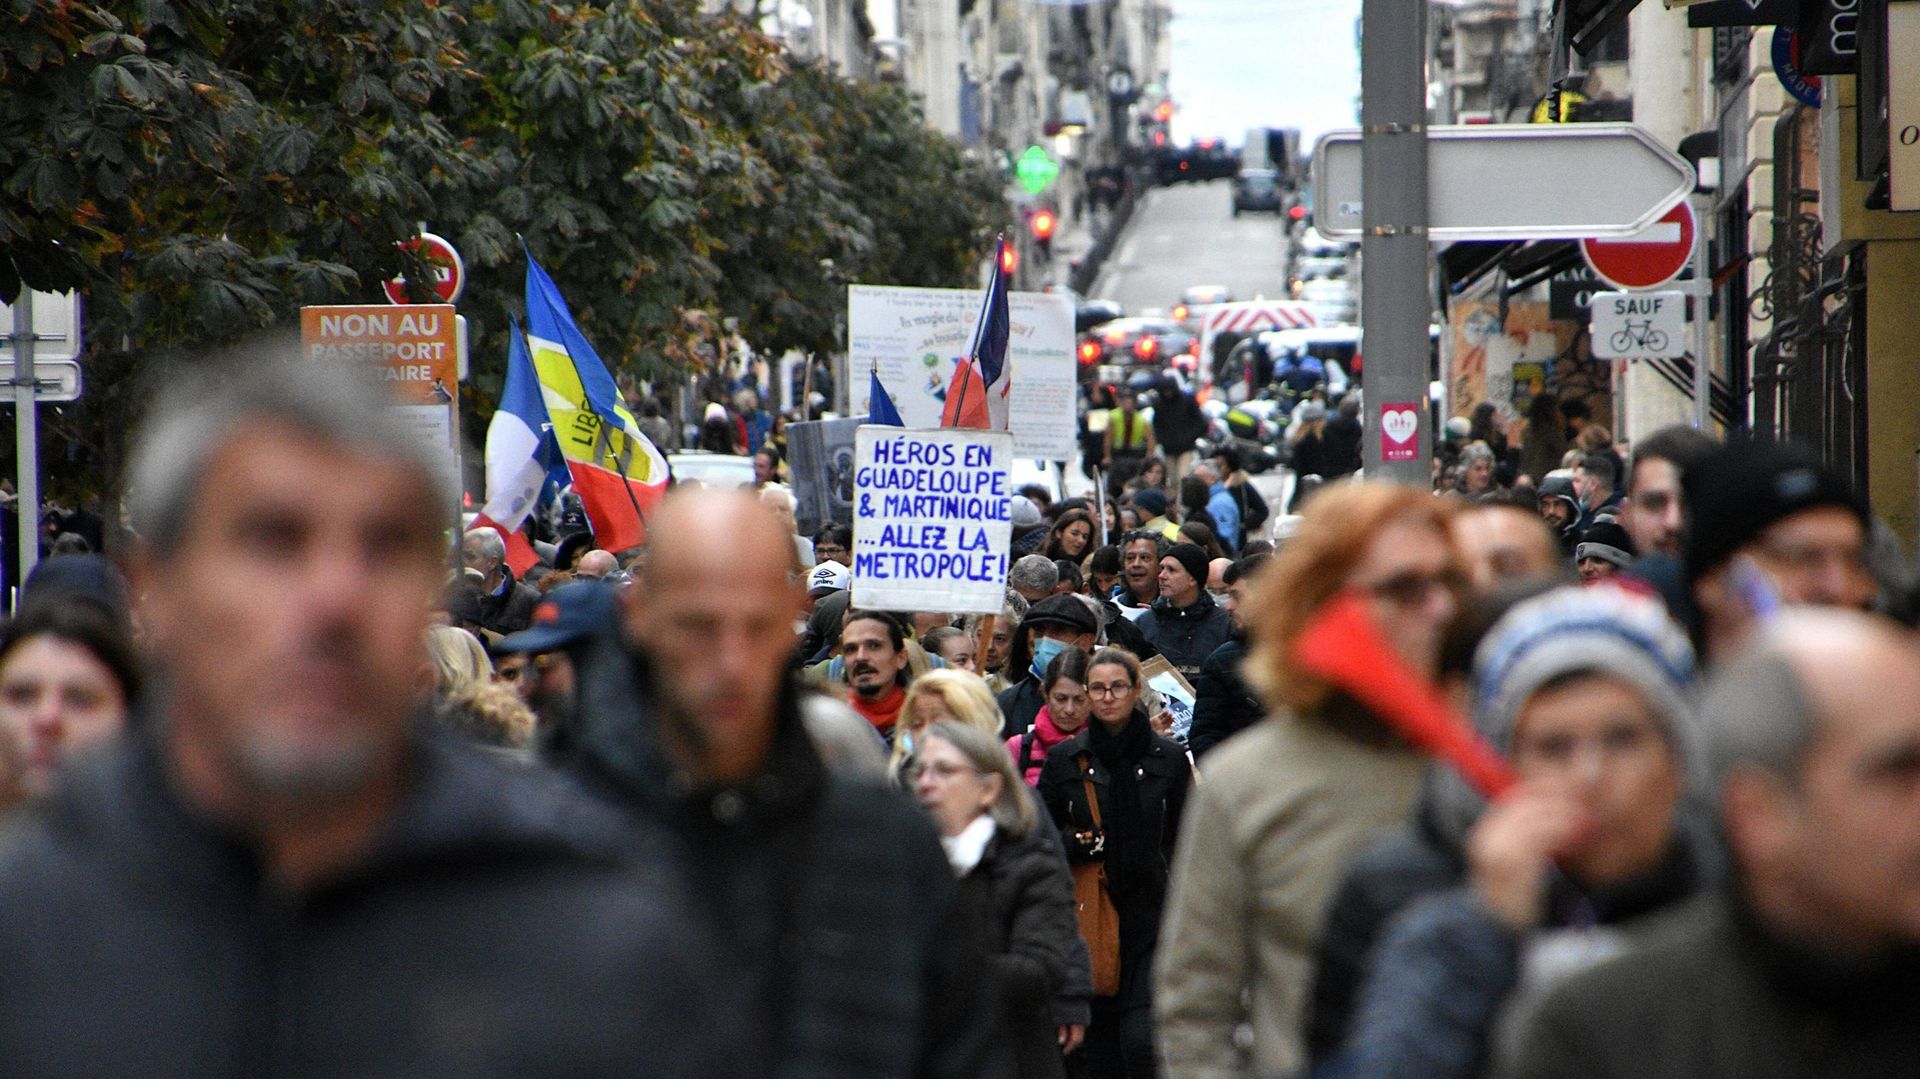 Des manifestants défilent dans la rue en tenant des drapeaux et des pancartes pendant la manifestation. Les manifestants sont descendus dans les rues de France pour protester contre le passeport santé (2021/11/27)